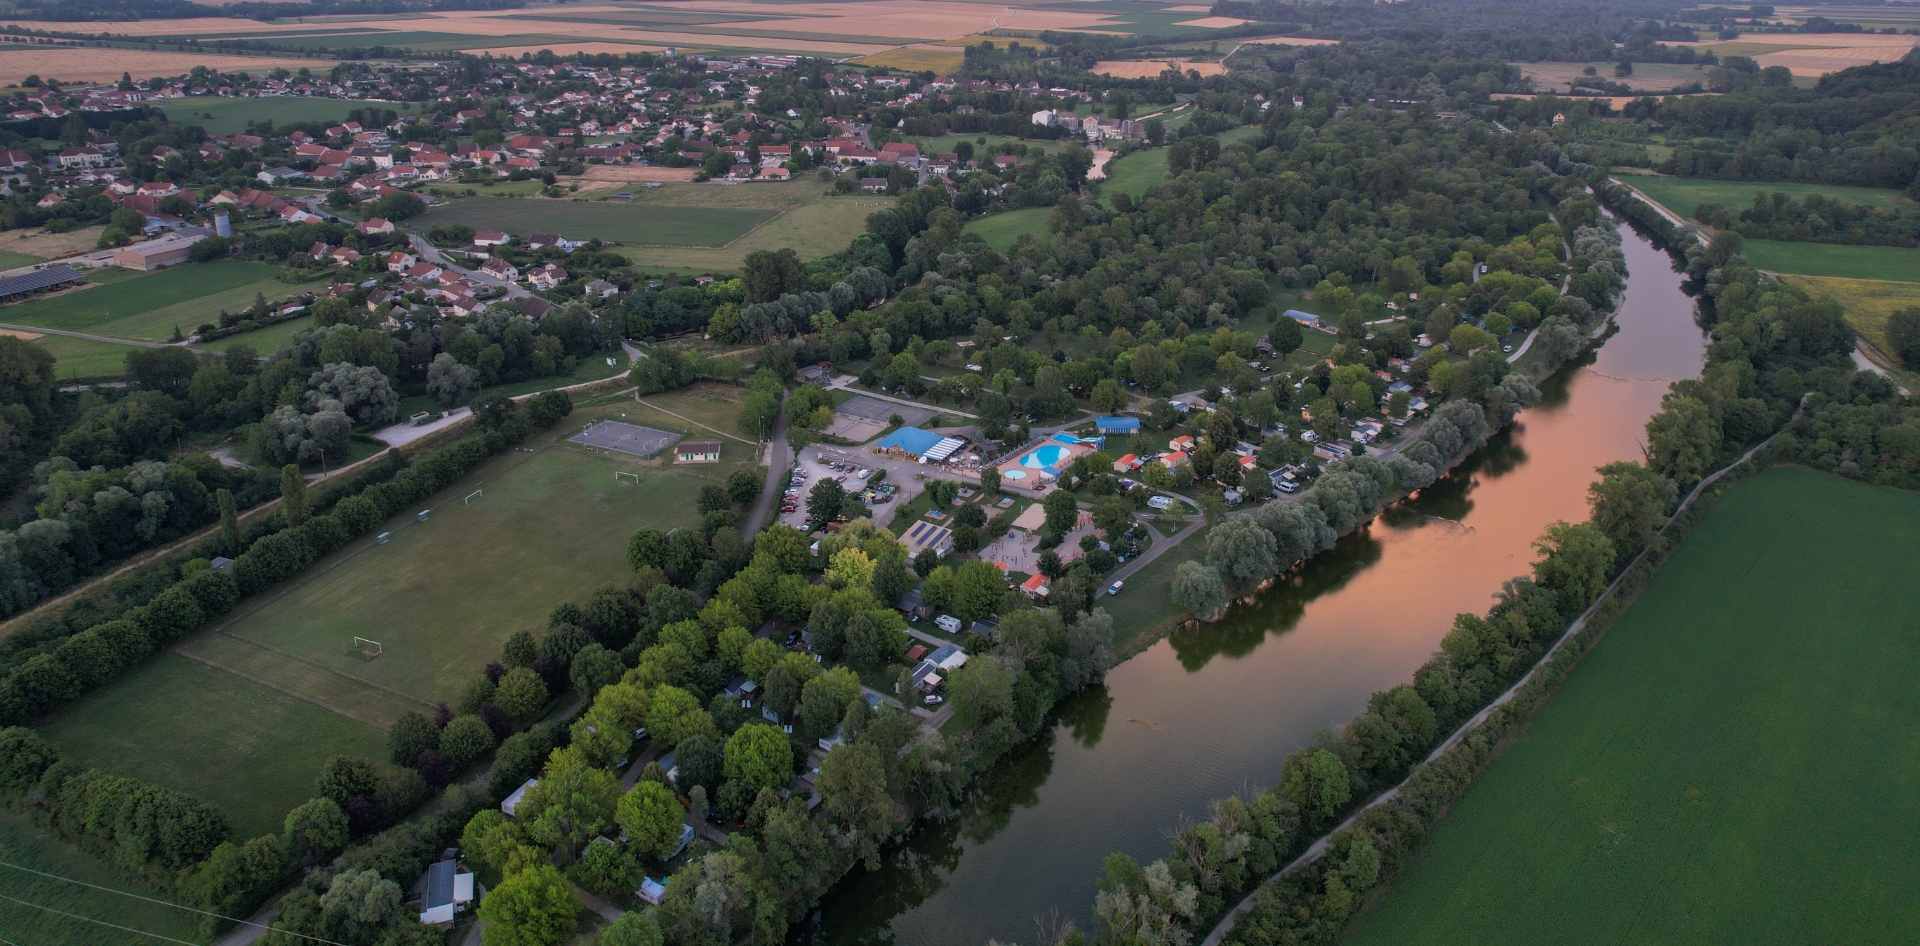 Luftbild des Campingplatzes Les Bords de Loue im Jura in der Region Bourgogne-Franche-Comté